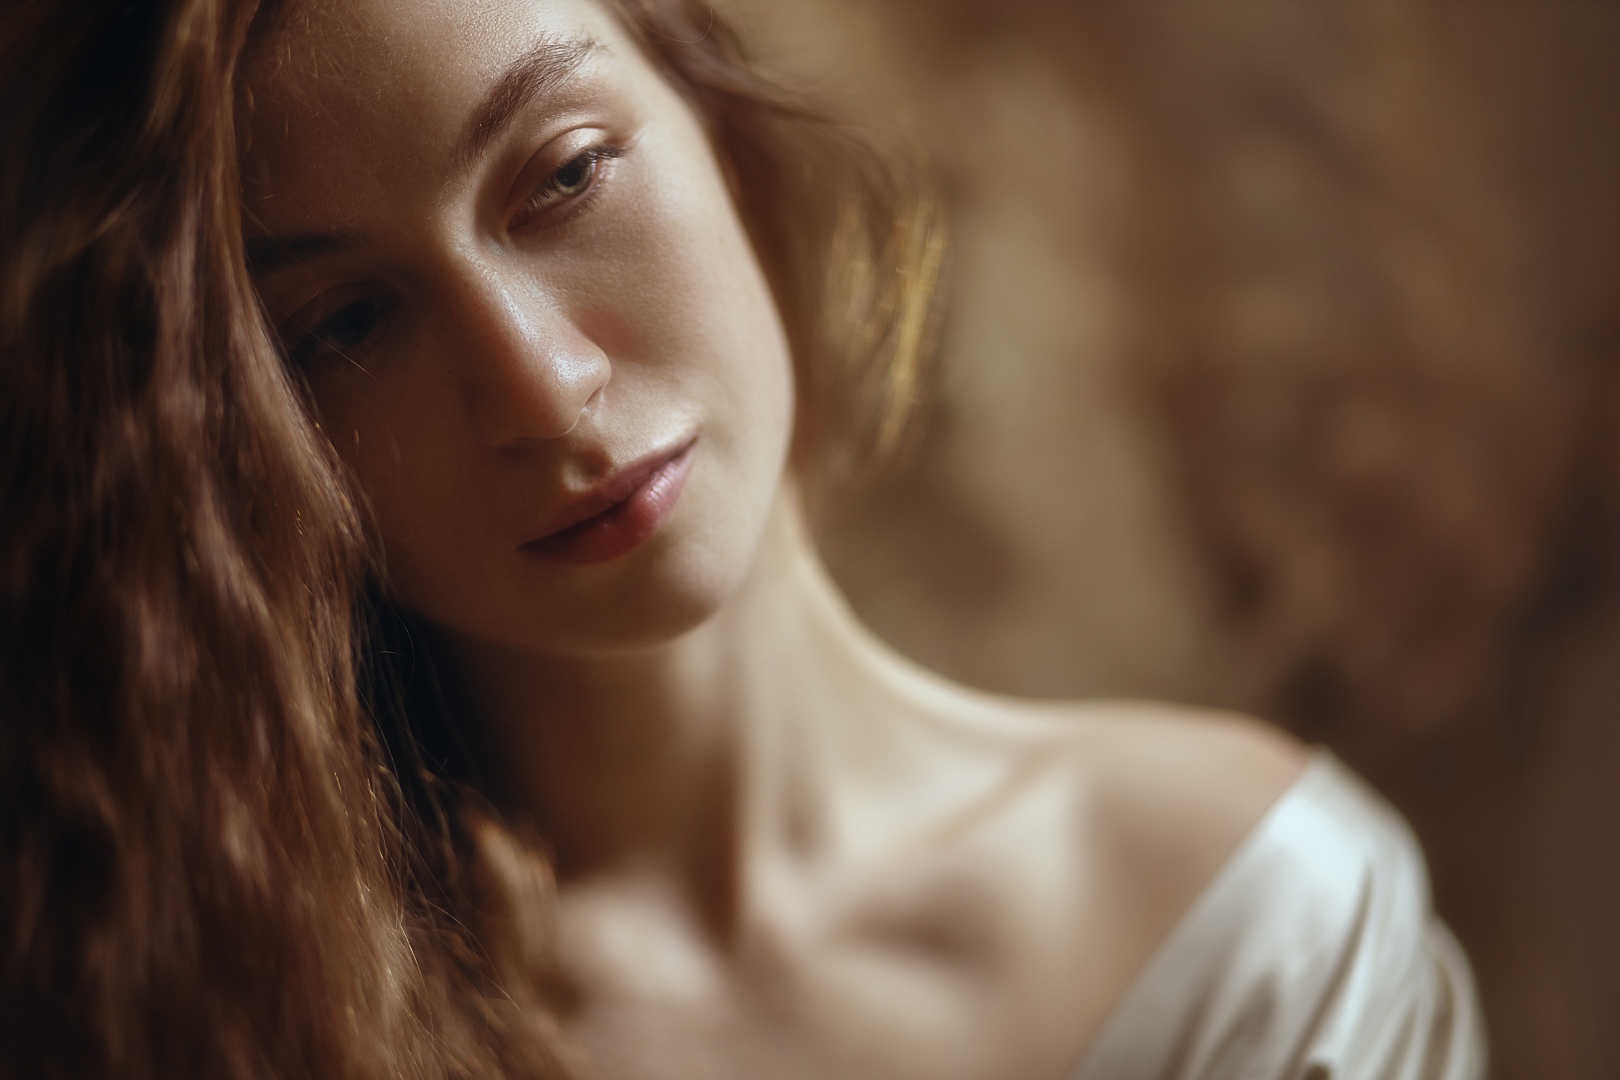 Sonja Lebedewa Women Model Face Closeup Portrait Looking Away Long Hair Brunette Bare Shoulders 1620x1080